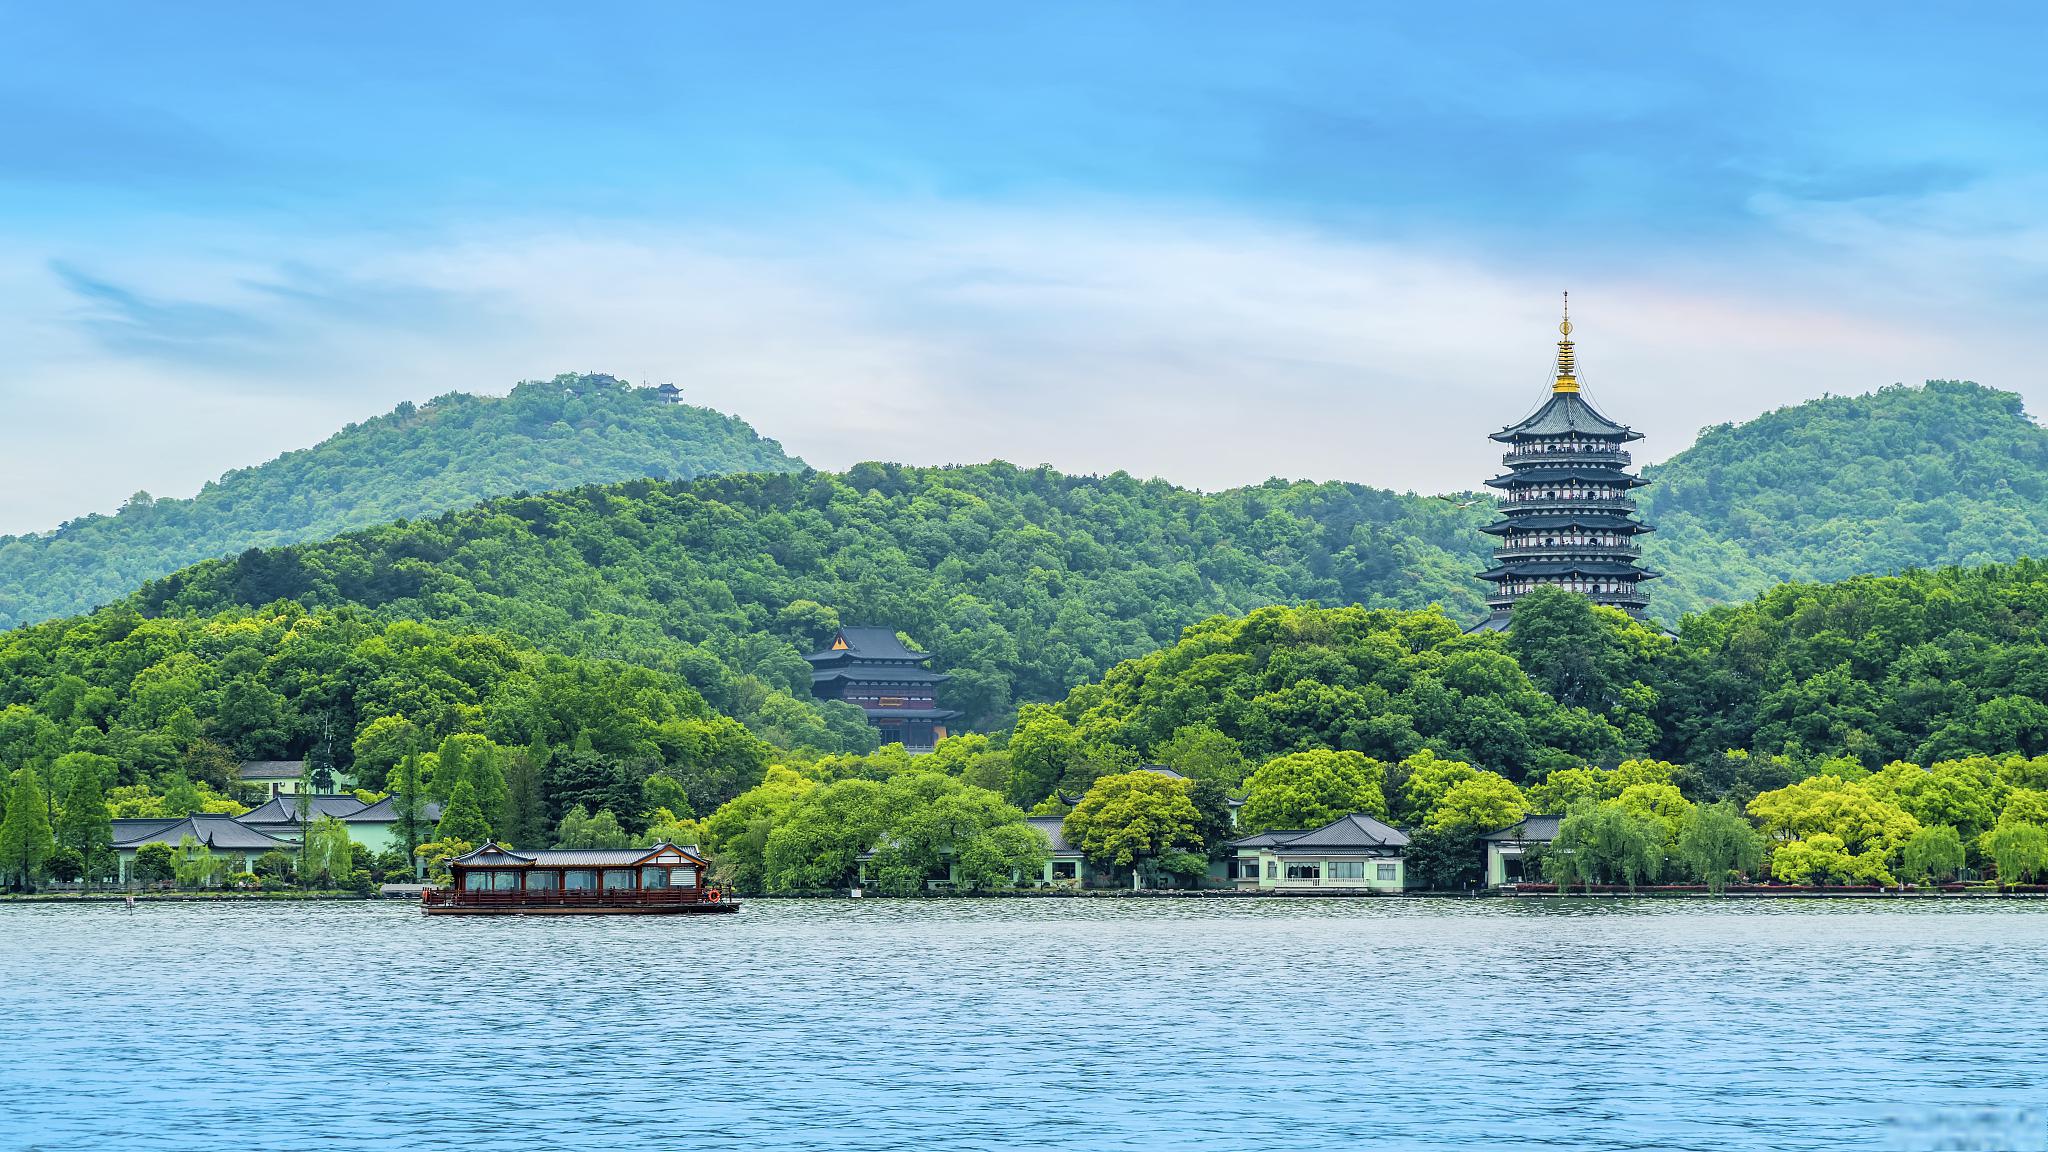 杭州作为一个风景秀丽,历史悠久的城市,拥有众多令人惊叹的景点和丰富